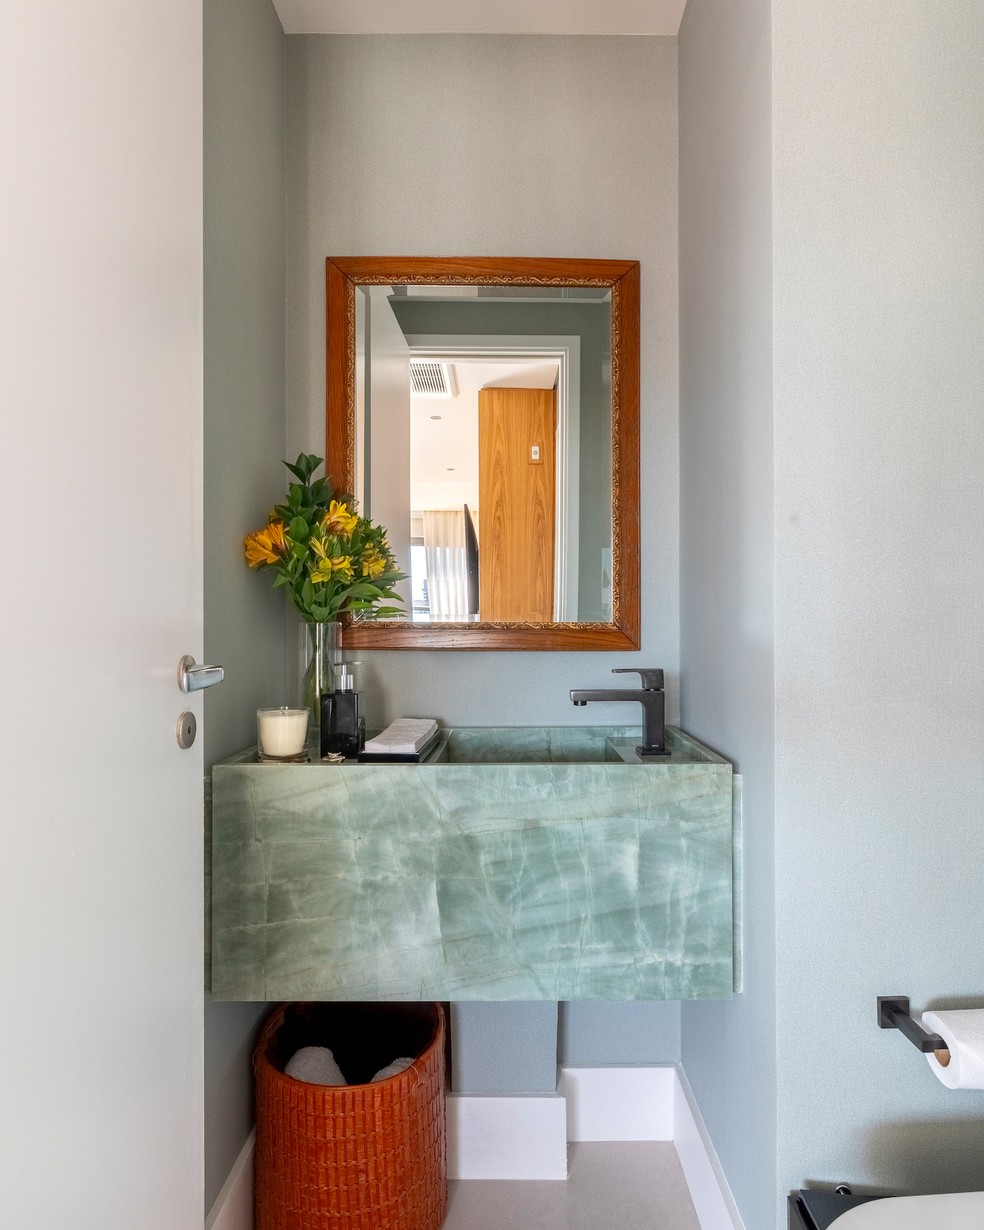 LAVABO | O revestimento colorido deixou o lavabo mais moderno e despojado — Foto: Marcelo Nakano / Divulgação